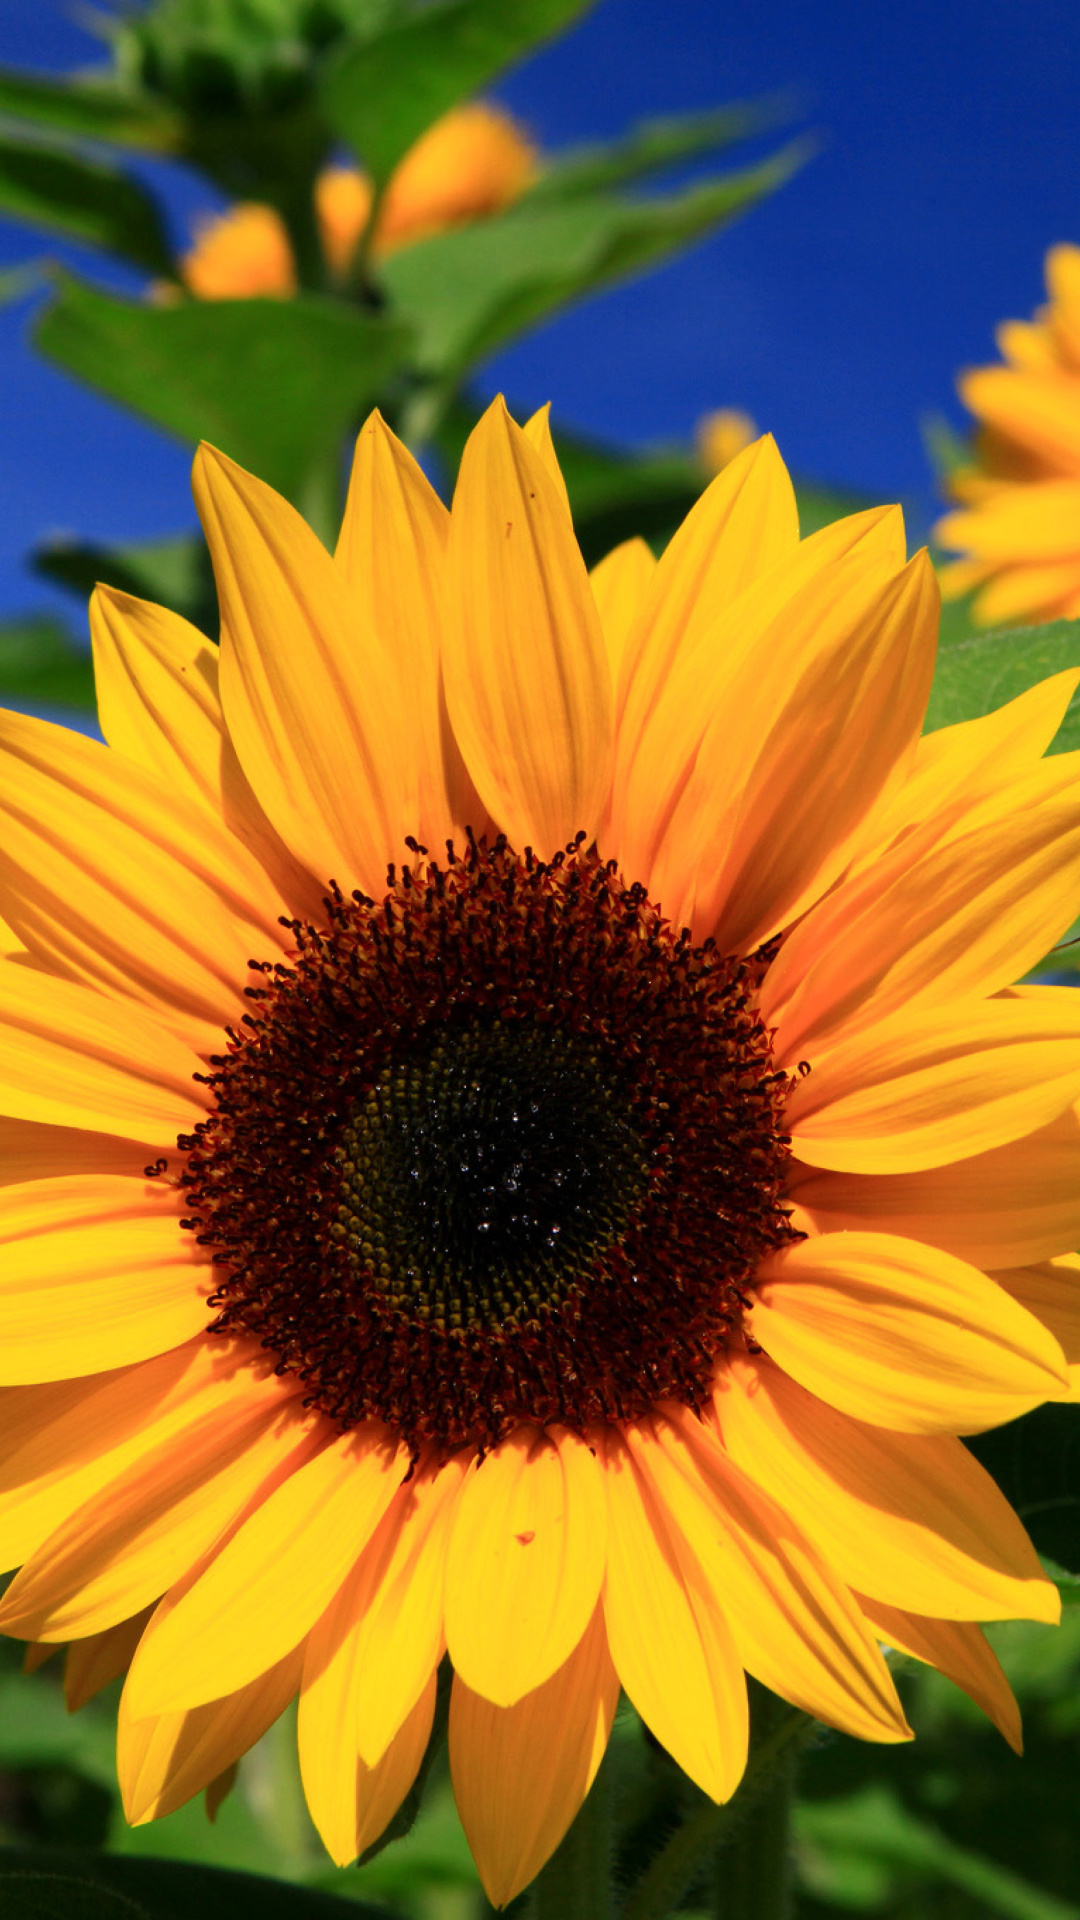 Sunflower close-up screenshot #1 1080x1920